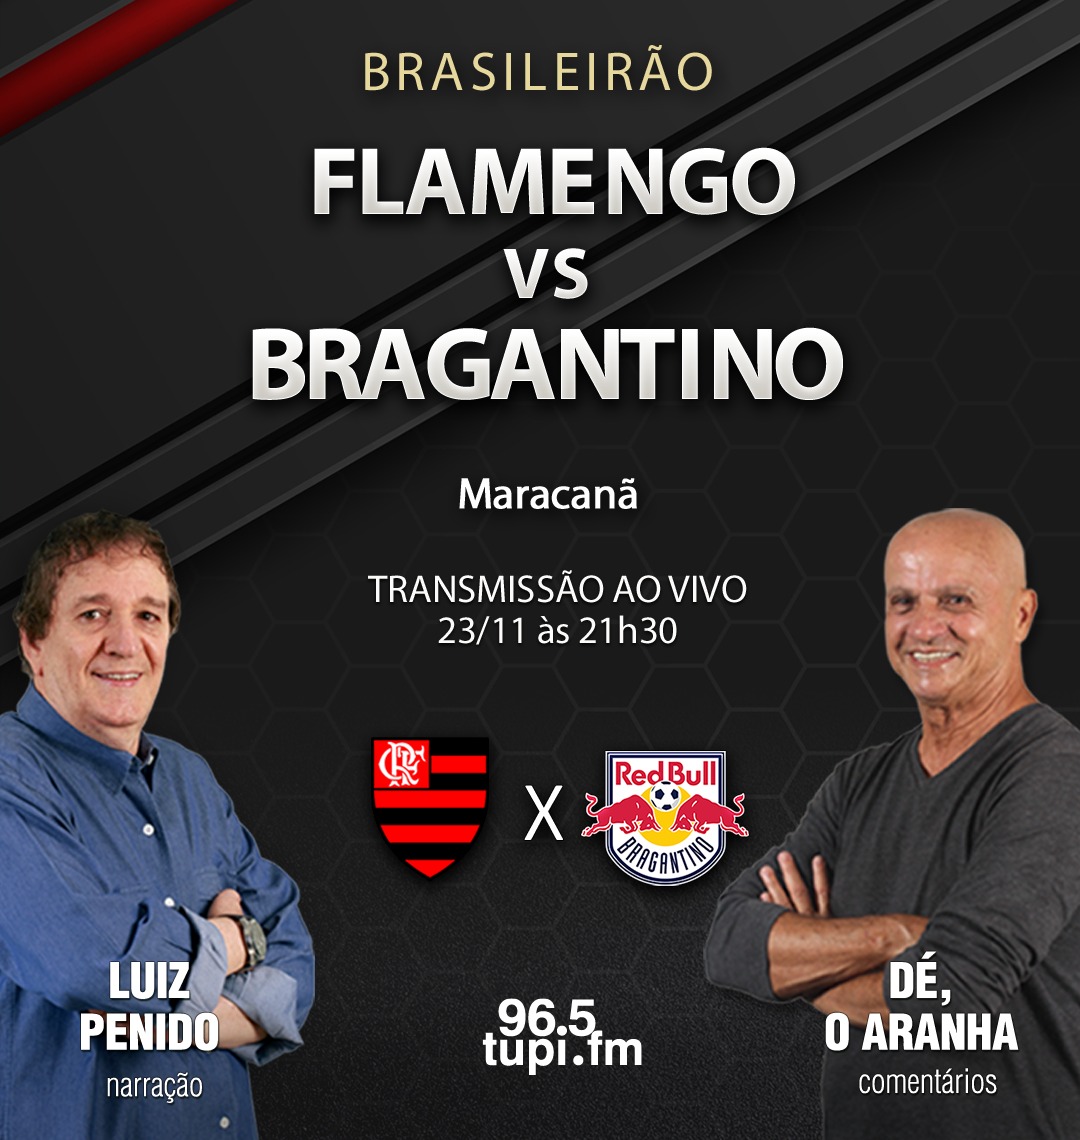 Flamengo x Minas AO VIVO